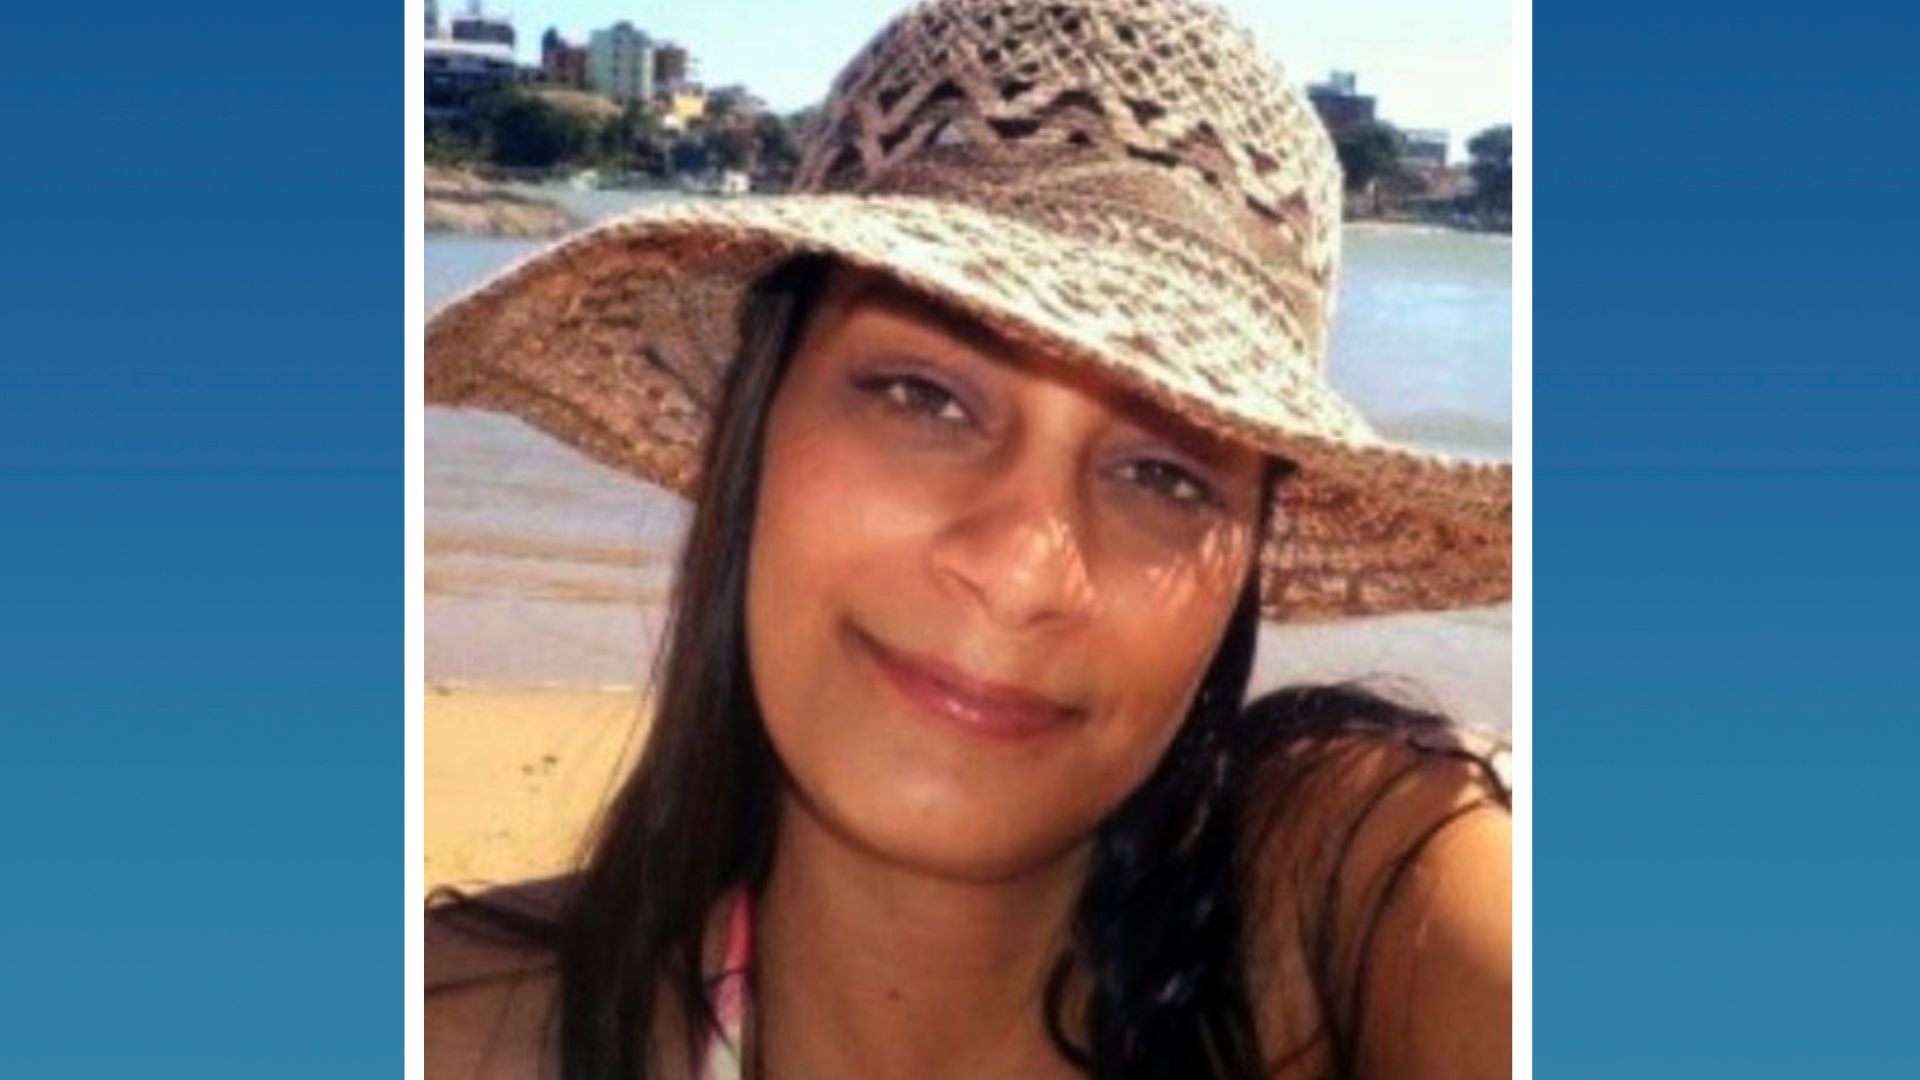 Sayonara Moreira Silva, hoje com 35 anos, aparece na lista dos mais procurados do Espírito Santo desde 2013